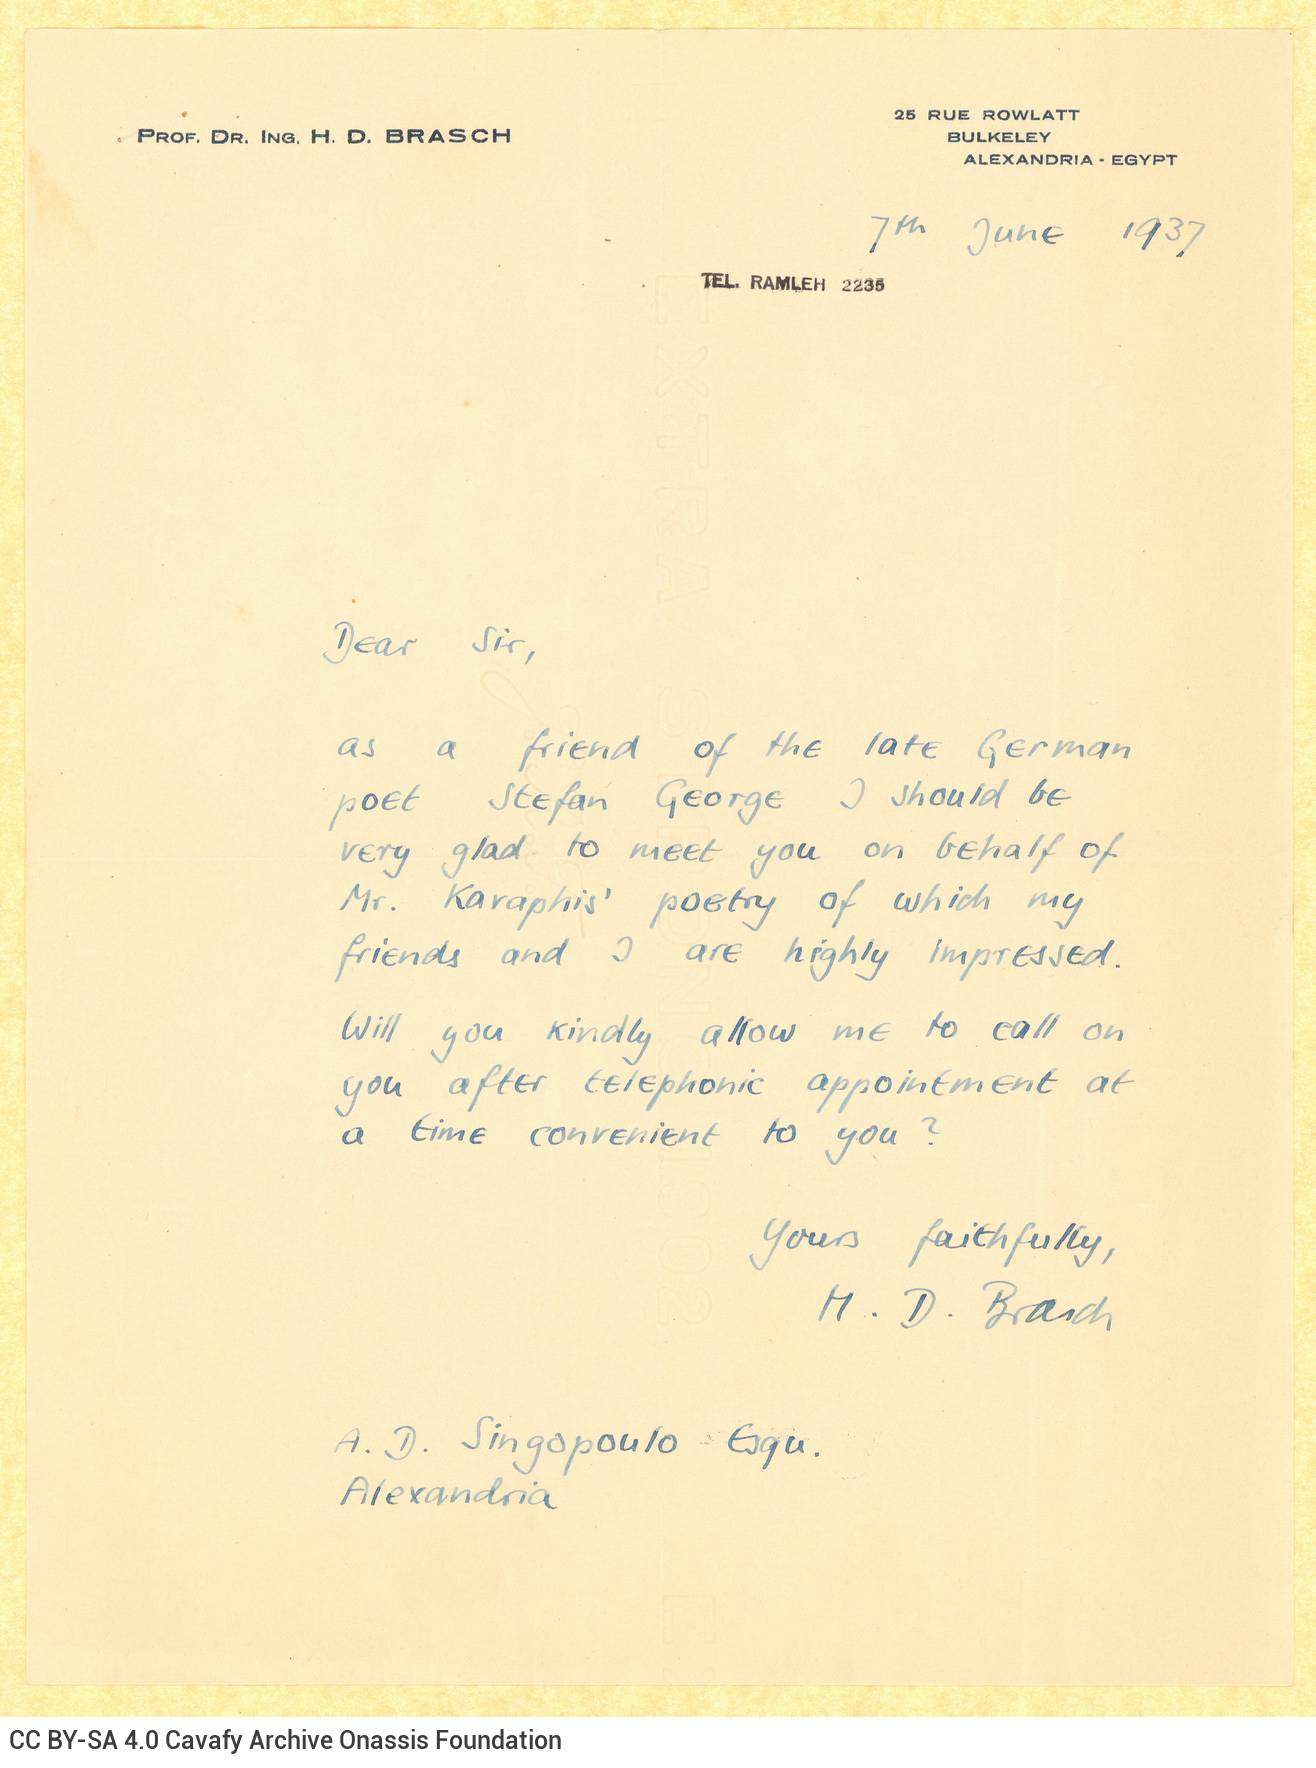 Χειρόγραφη επιστολή του καθηγητή H. D. Brasch προς τον Αλέκο Σεγκόπουλο σ